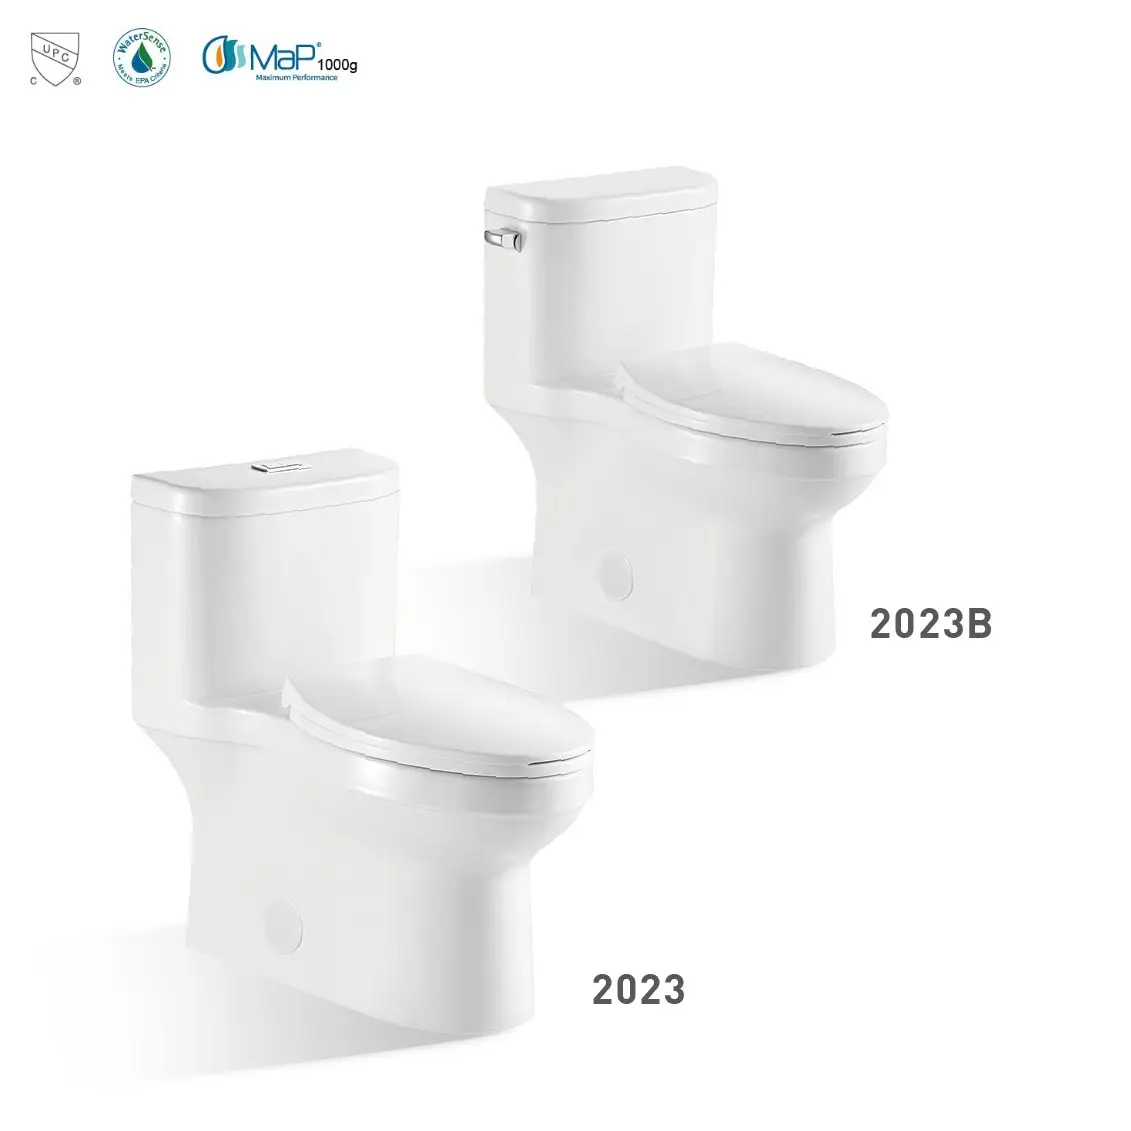 USA Standard Sanitaire de haute qualité wc monté au sol blanc brillant inodoro salle de bain cupc une pièce en céramique cuvette de toilette